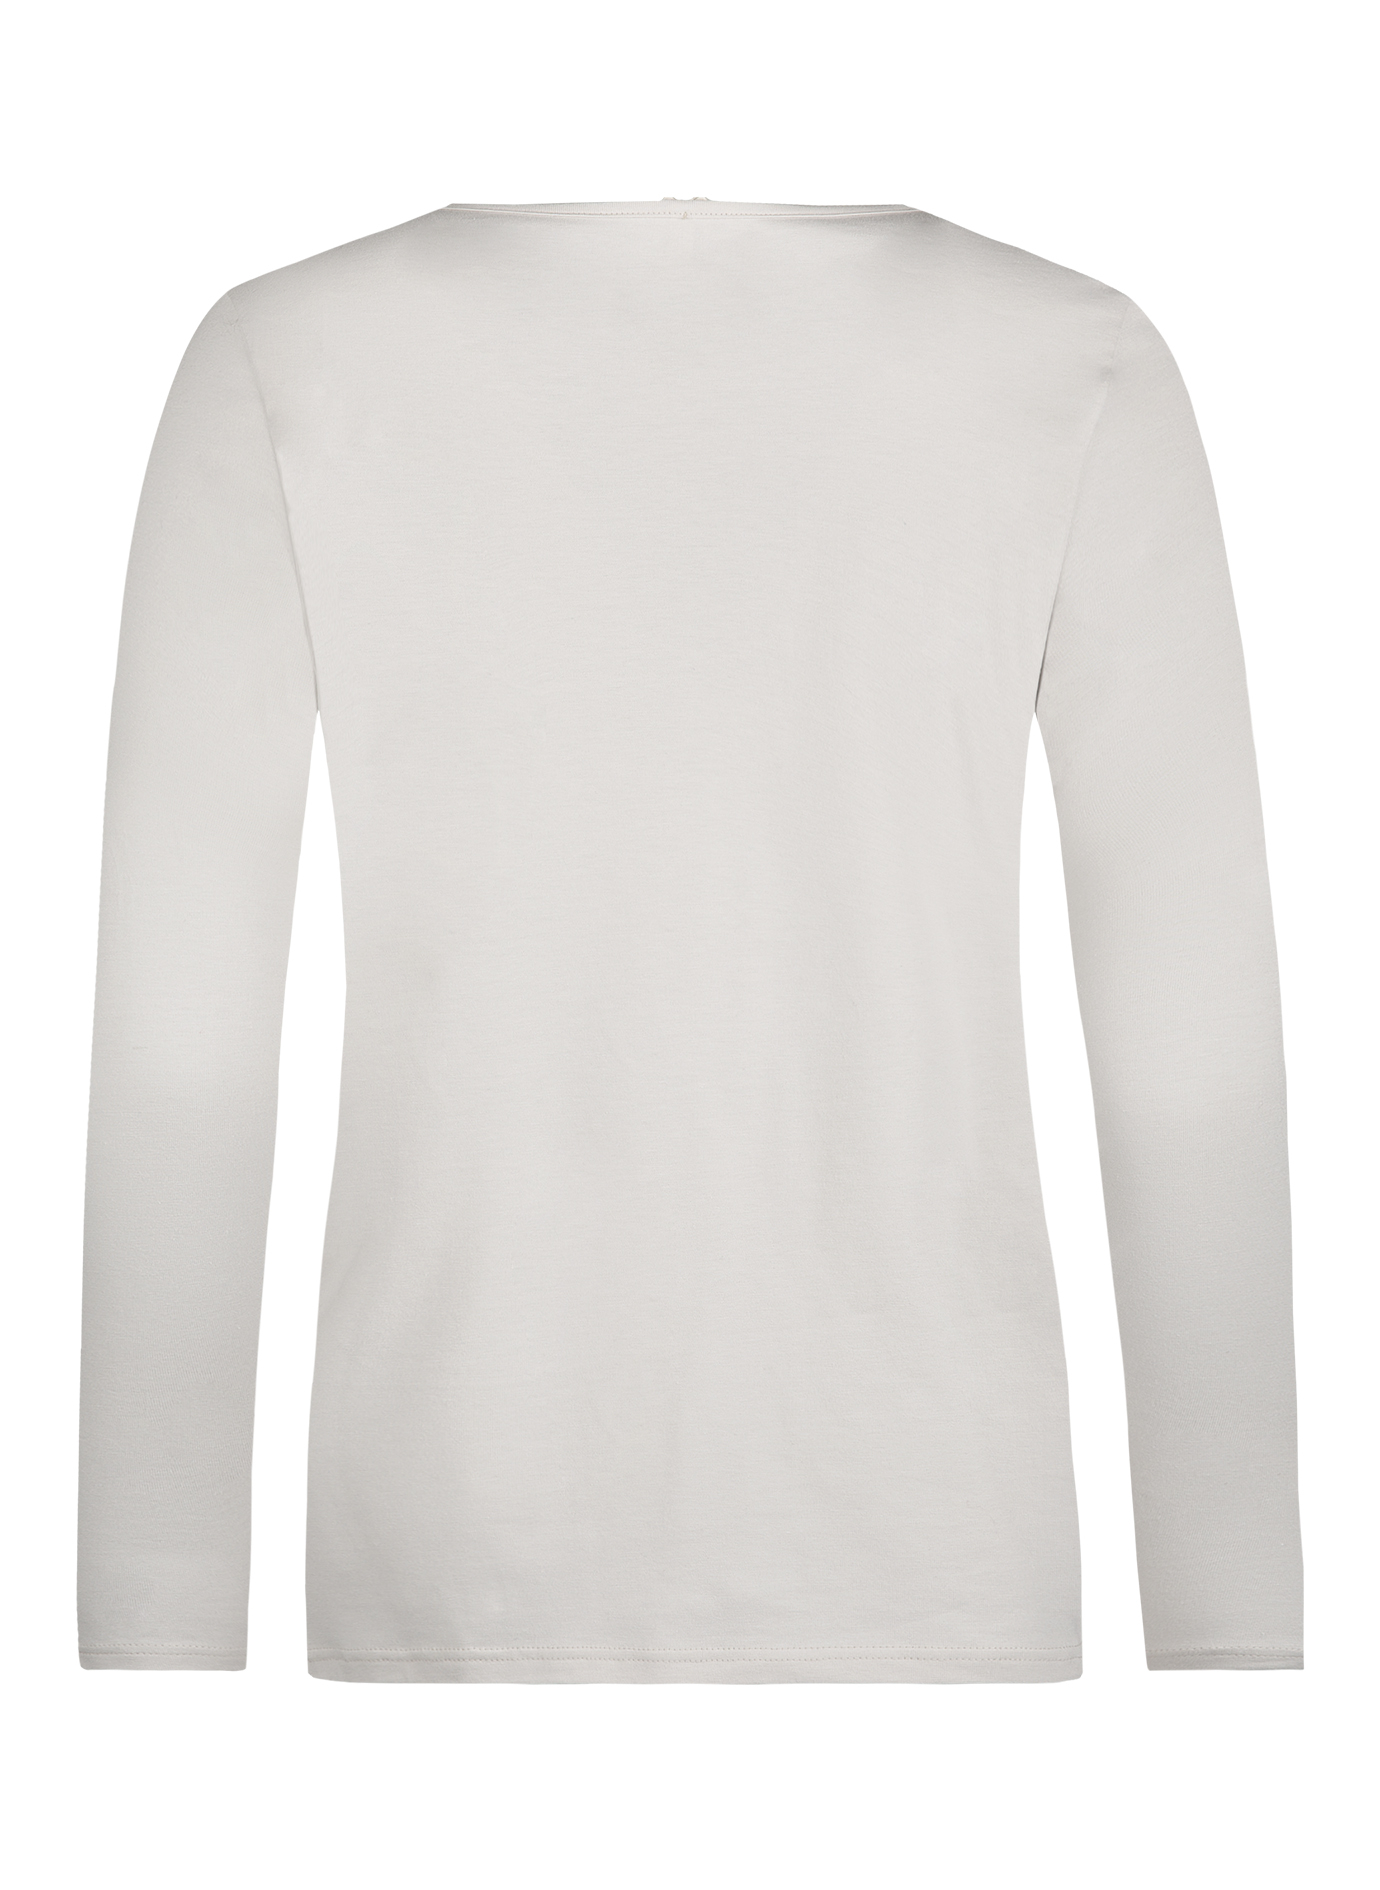 Damen-Shirt Langarm Off-White